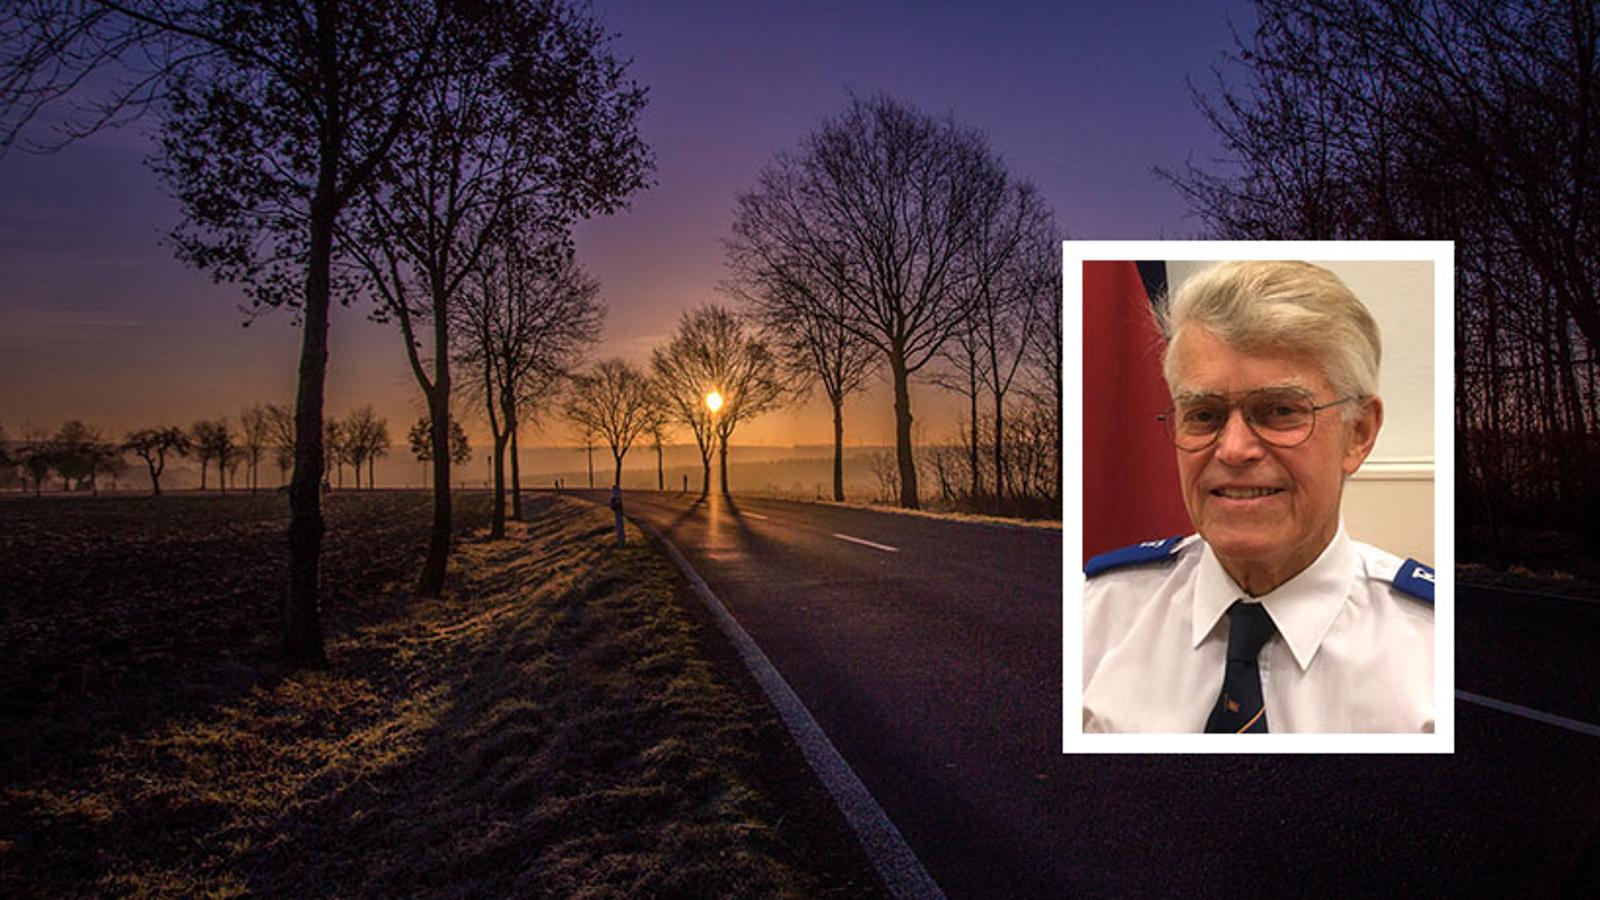 Till vänster: En bilväg med träd som växer på båda sidorna om vägen. I bakgrunden, genom en trädkrona, syns en solnedgång. Till höger: Sven Tegner.